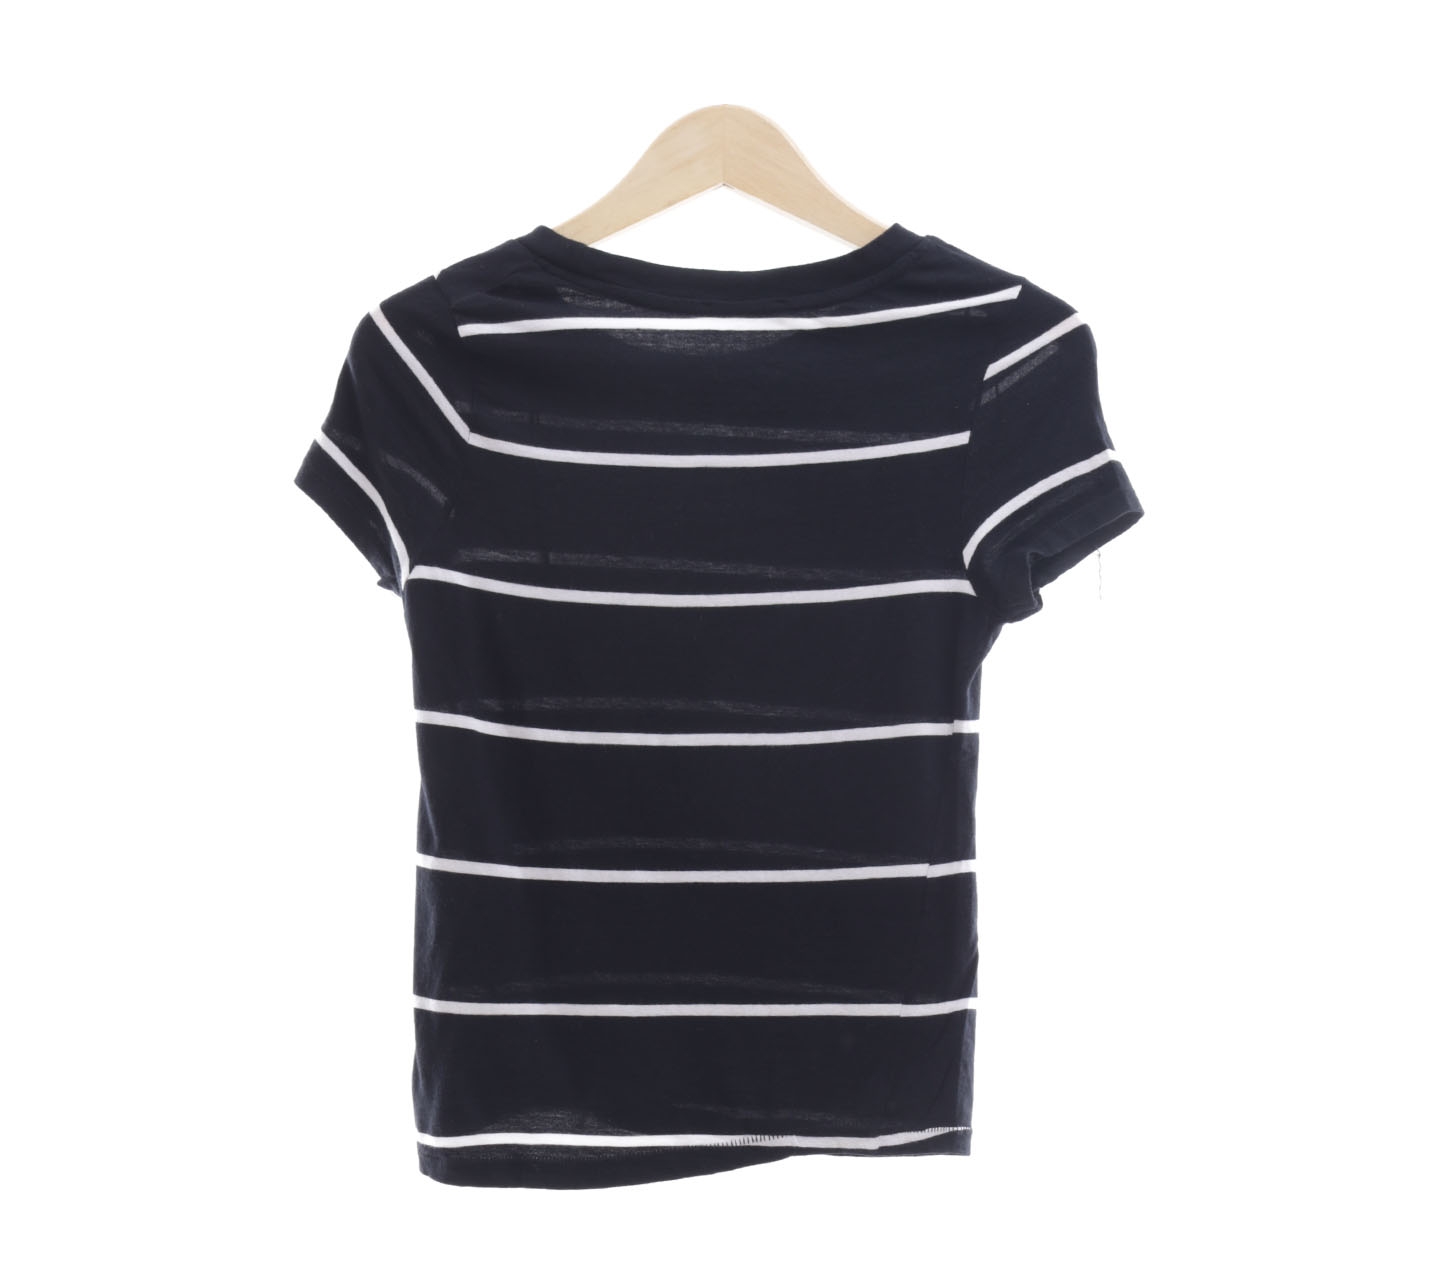 Zara Black & White Striped T-Shirt